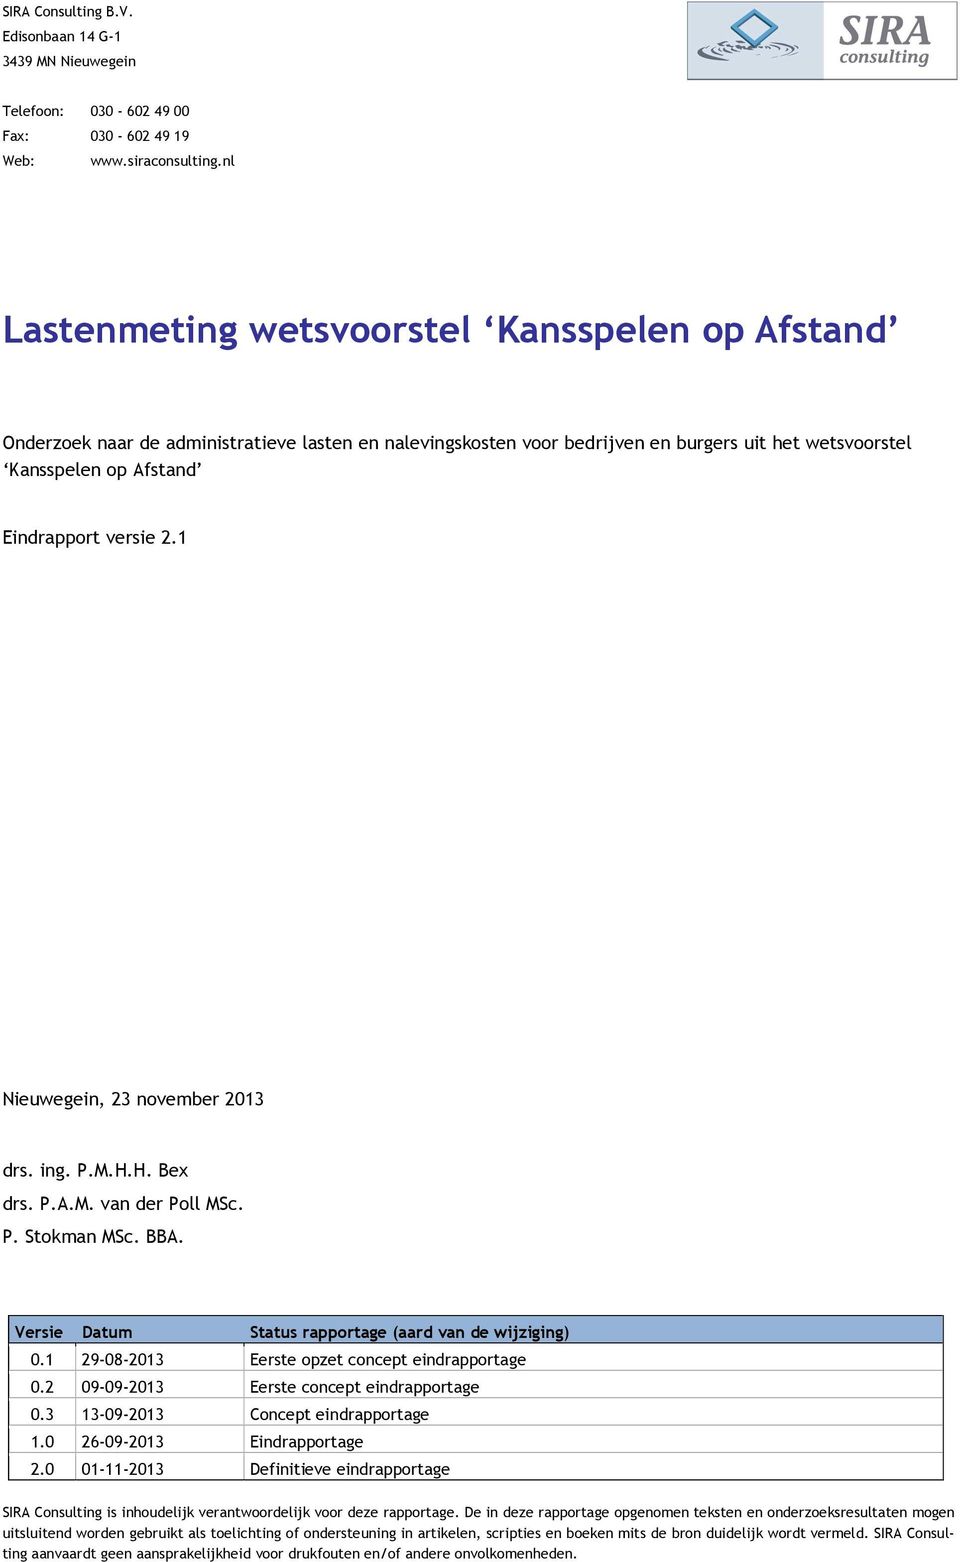 2.1 Nieuwegein, 23 november 2013 drs. ing. P.M.H.H. Bex drs. P.A.M. van der Poll MSc. P. Stokman MSc. BBA. Versie Datum Status rapportage (aard van de wijziging) 0.